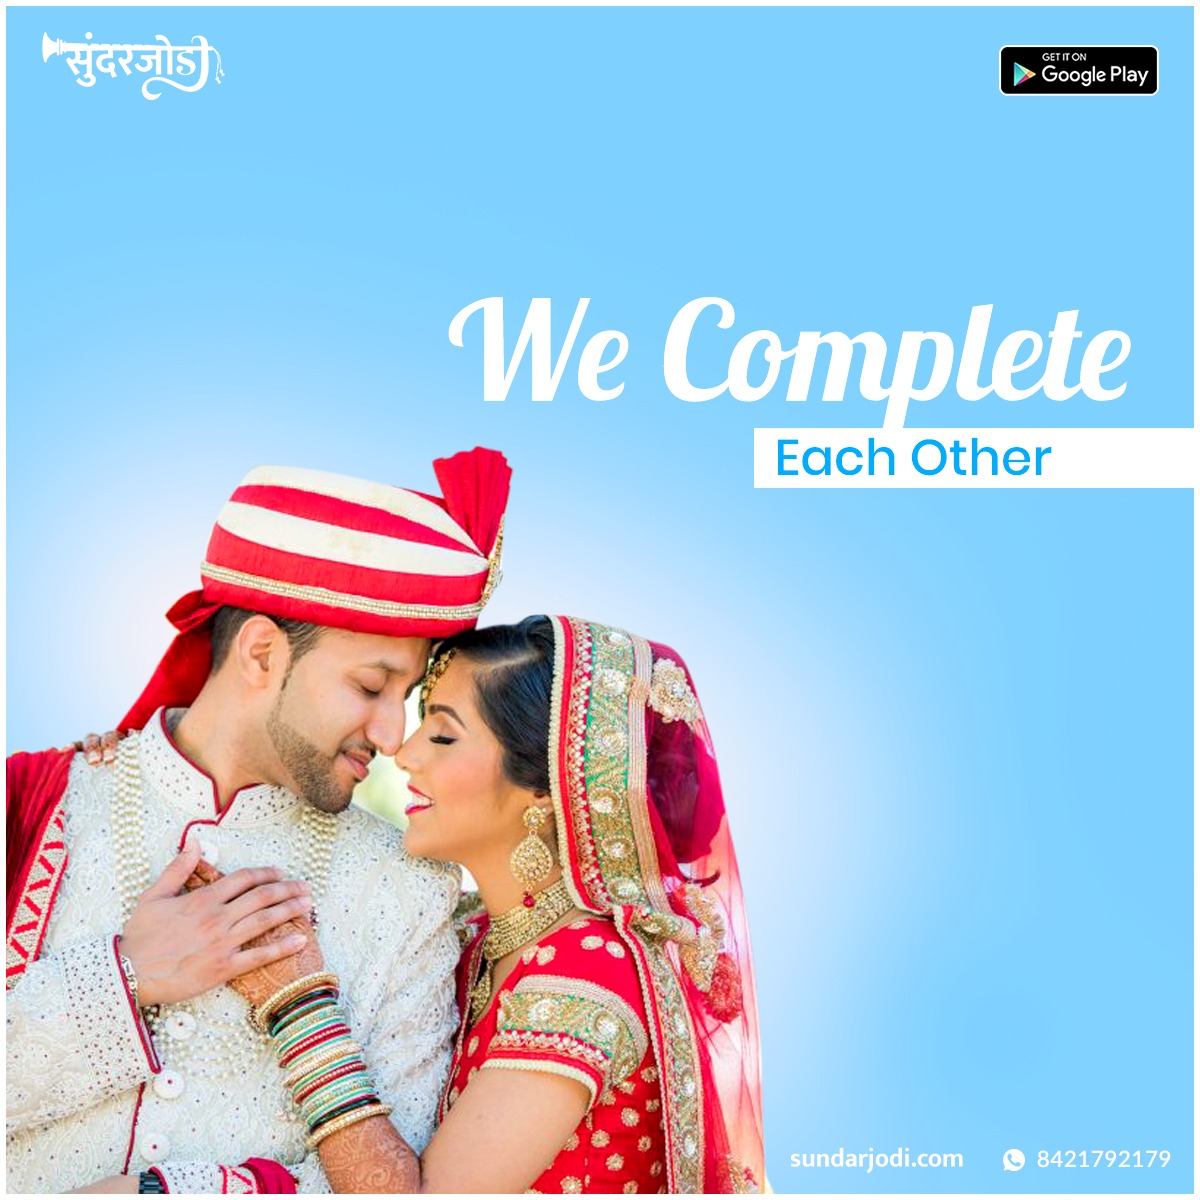 Marathi matrimony website